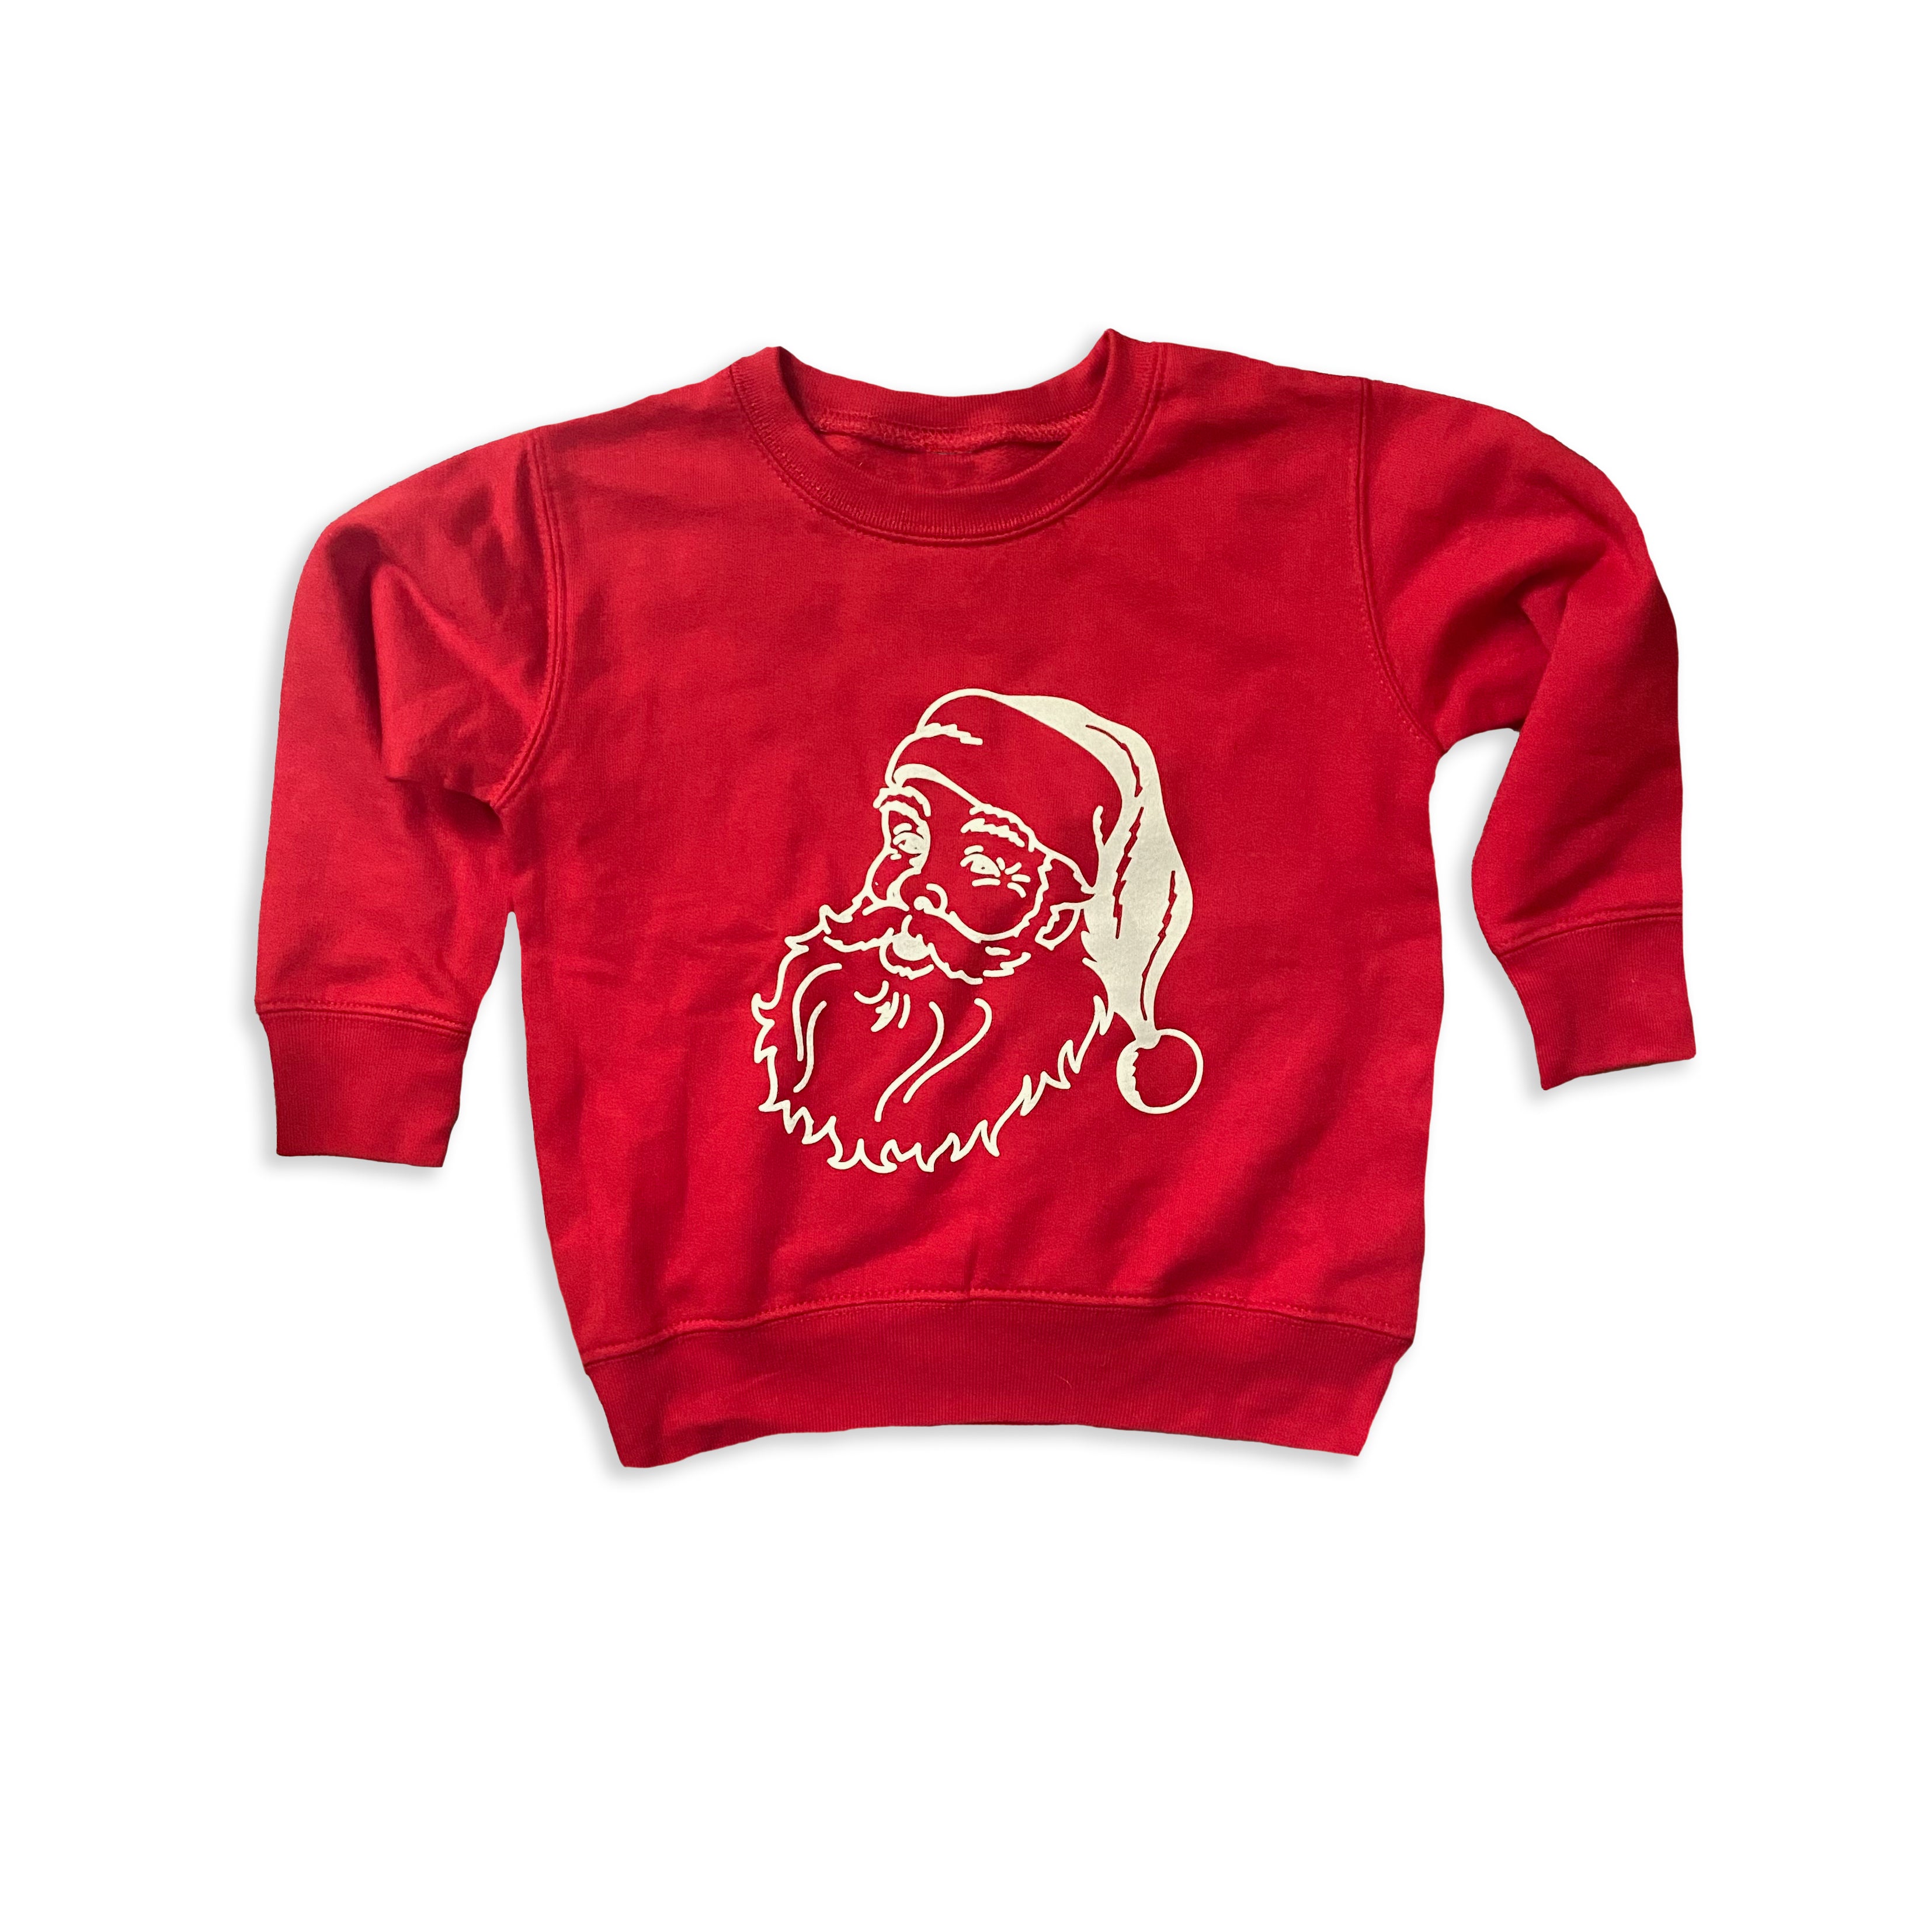 Vintage Santa toddler sweatshirt